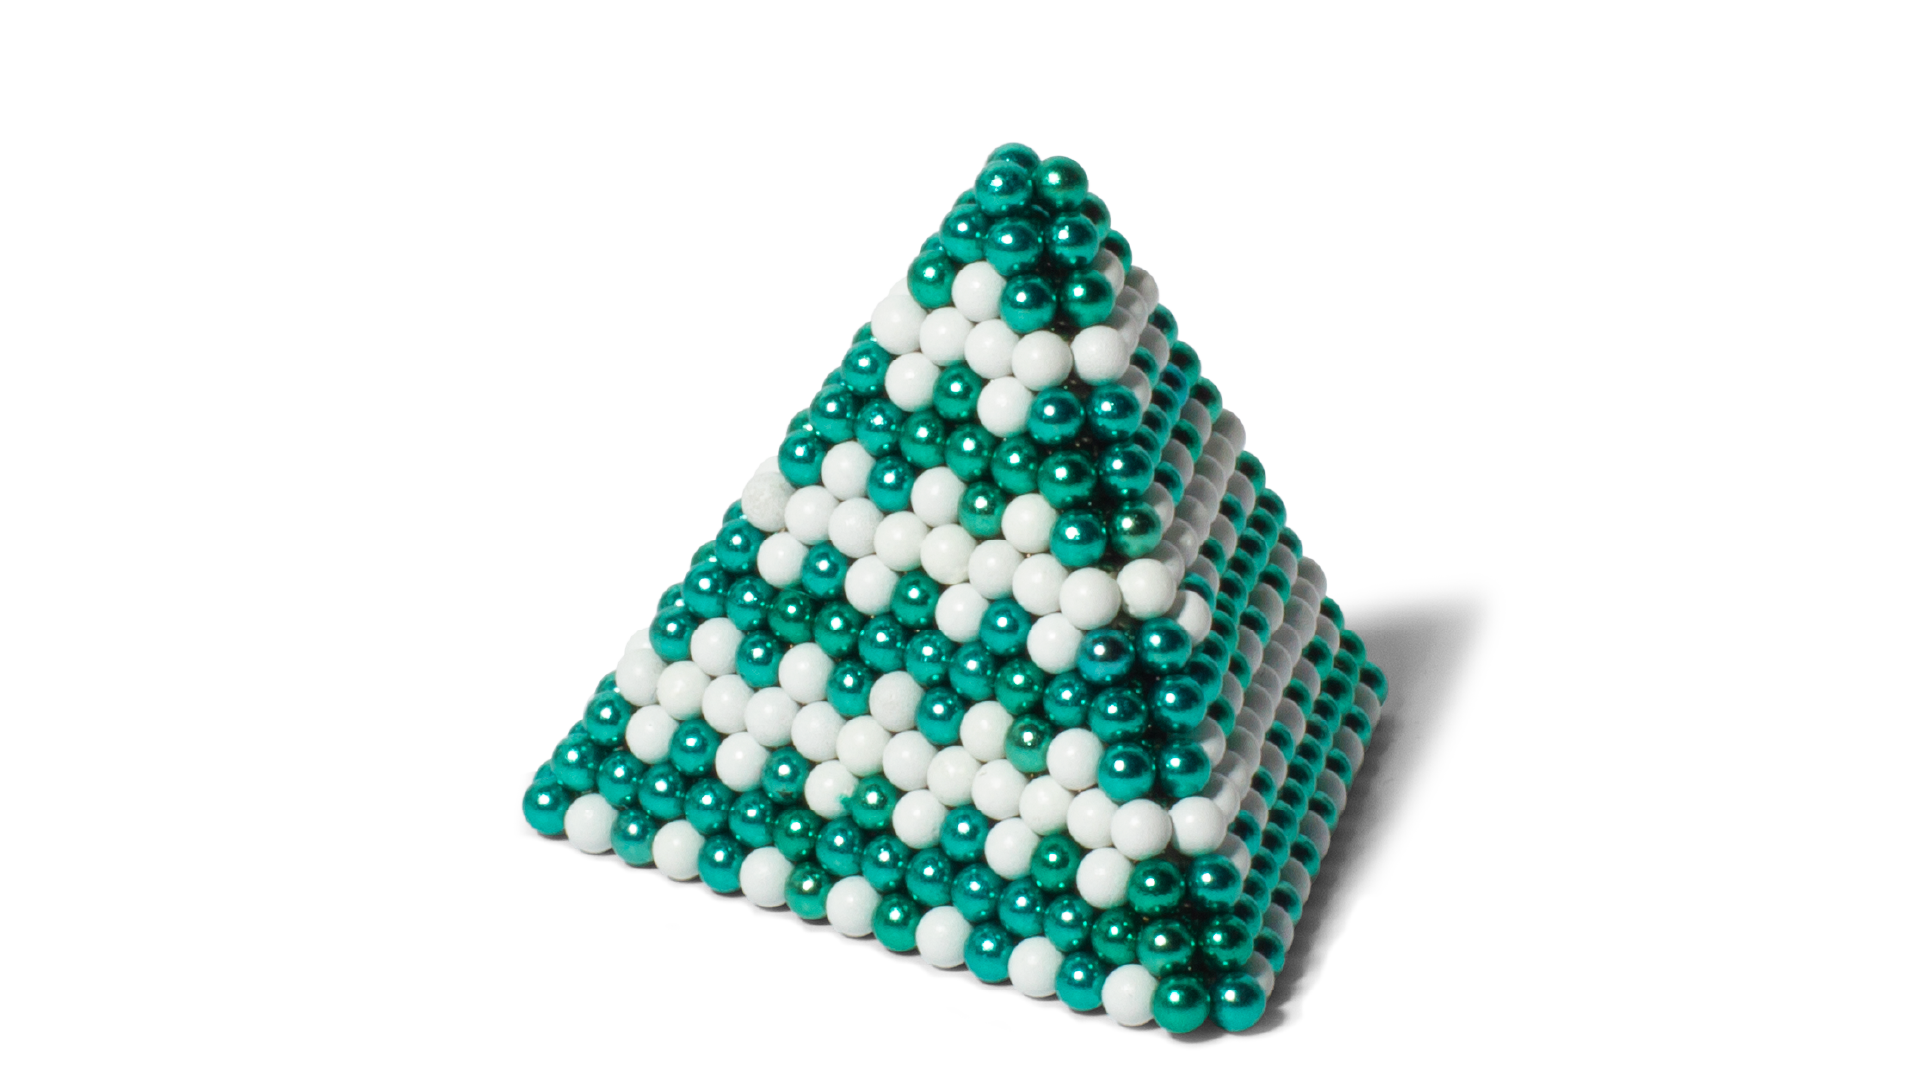 The ZigZag Pyramid